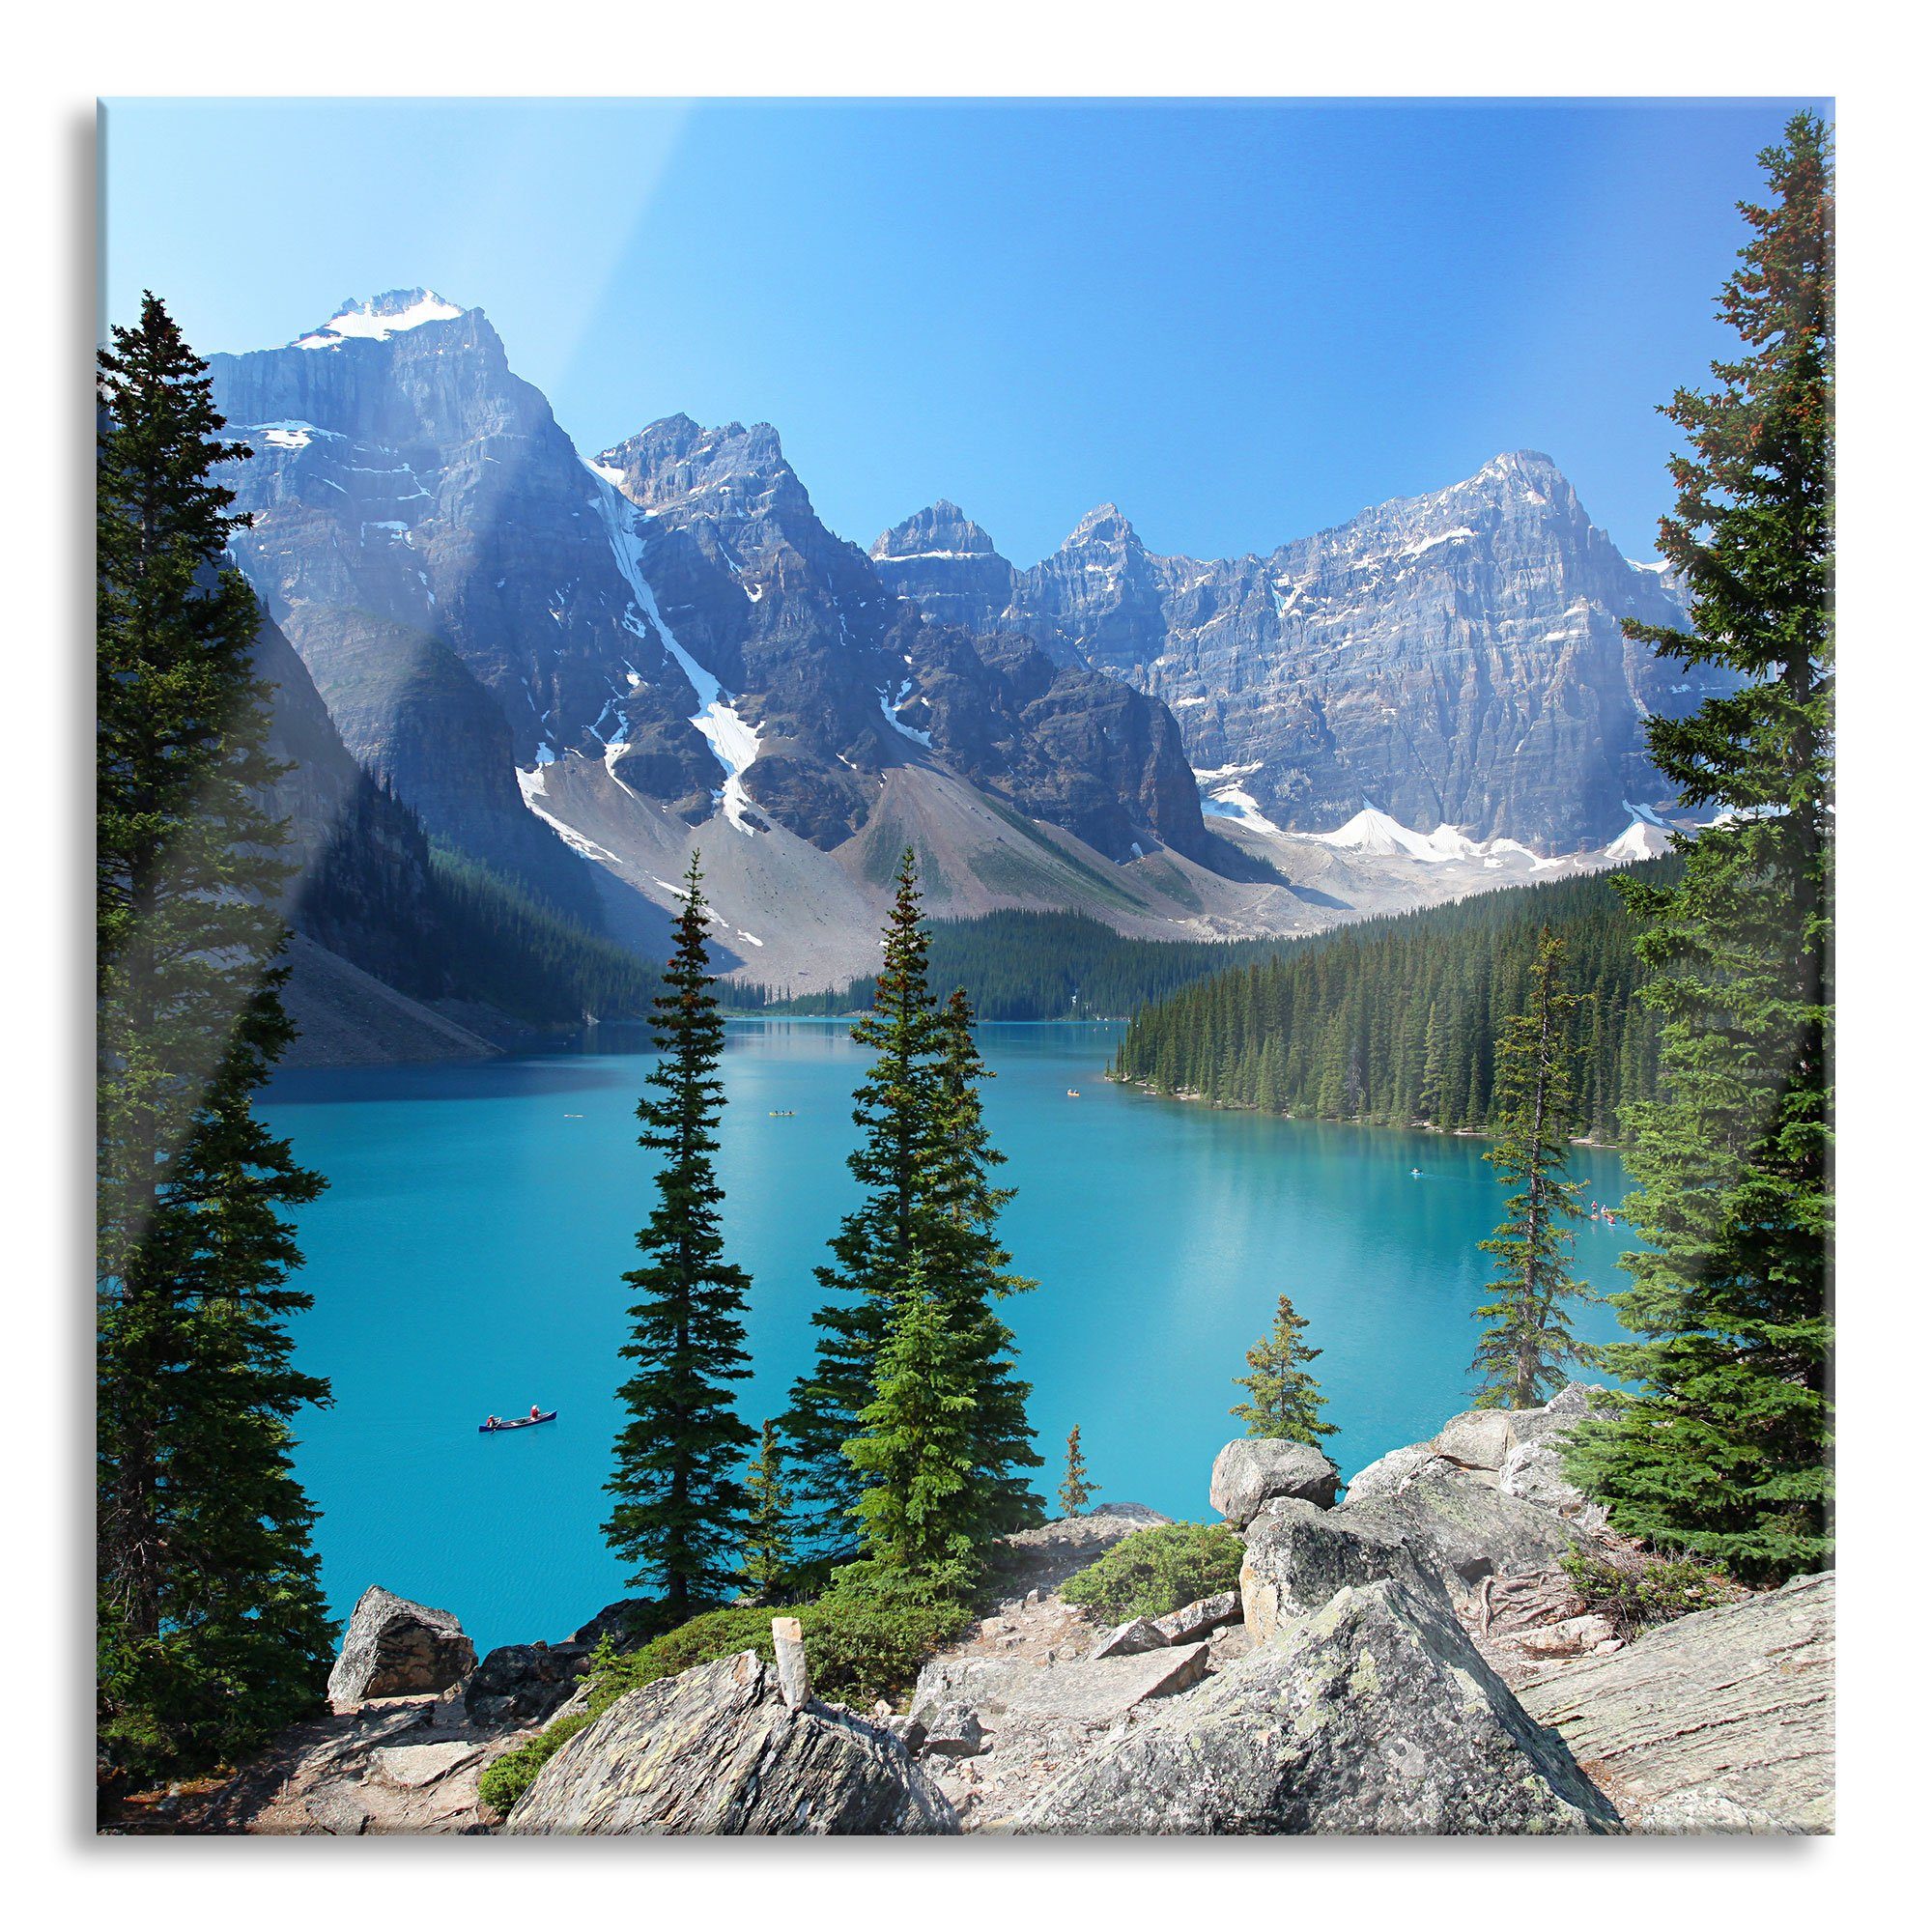 Pixxprint Glasbild Moraine Lake kanadische Berge, Moraine Lake kanadische Berge (1 St), Glasbild aus Echtglas, inkl. Aufhängungen und Abstandshalter